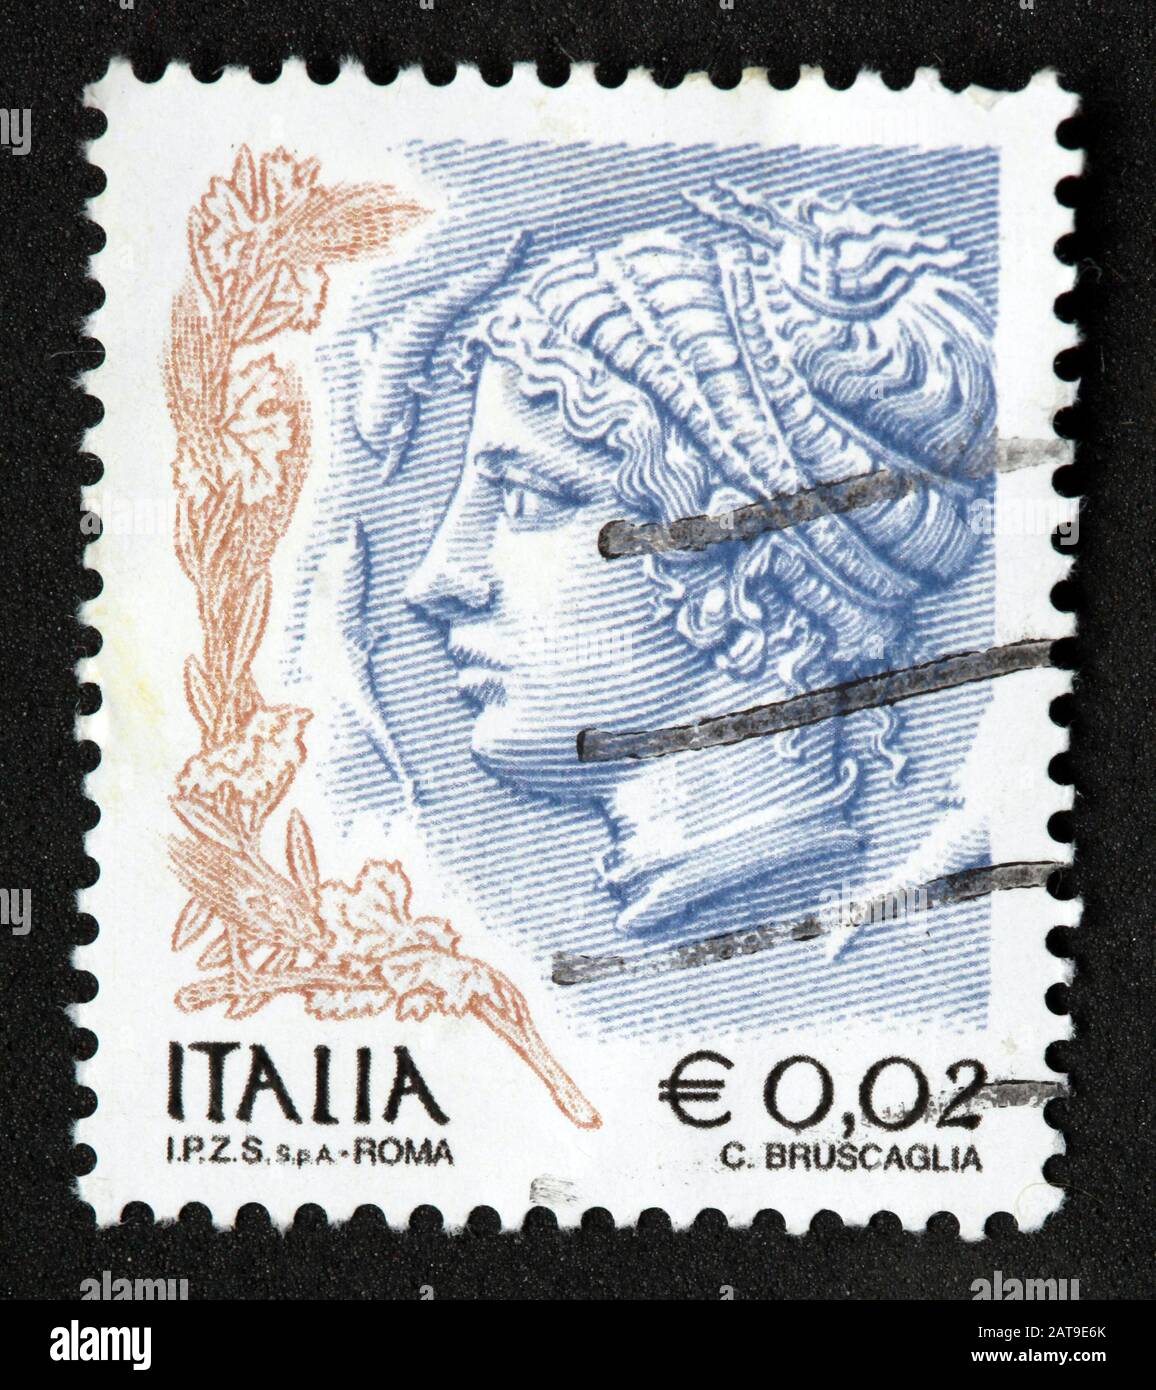 Timbre italien, poste Italia utilisé et timbre francé, Banque D'Images